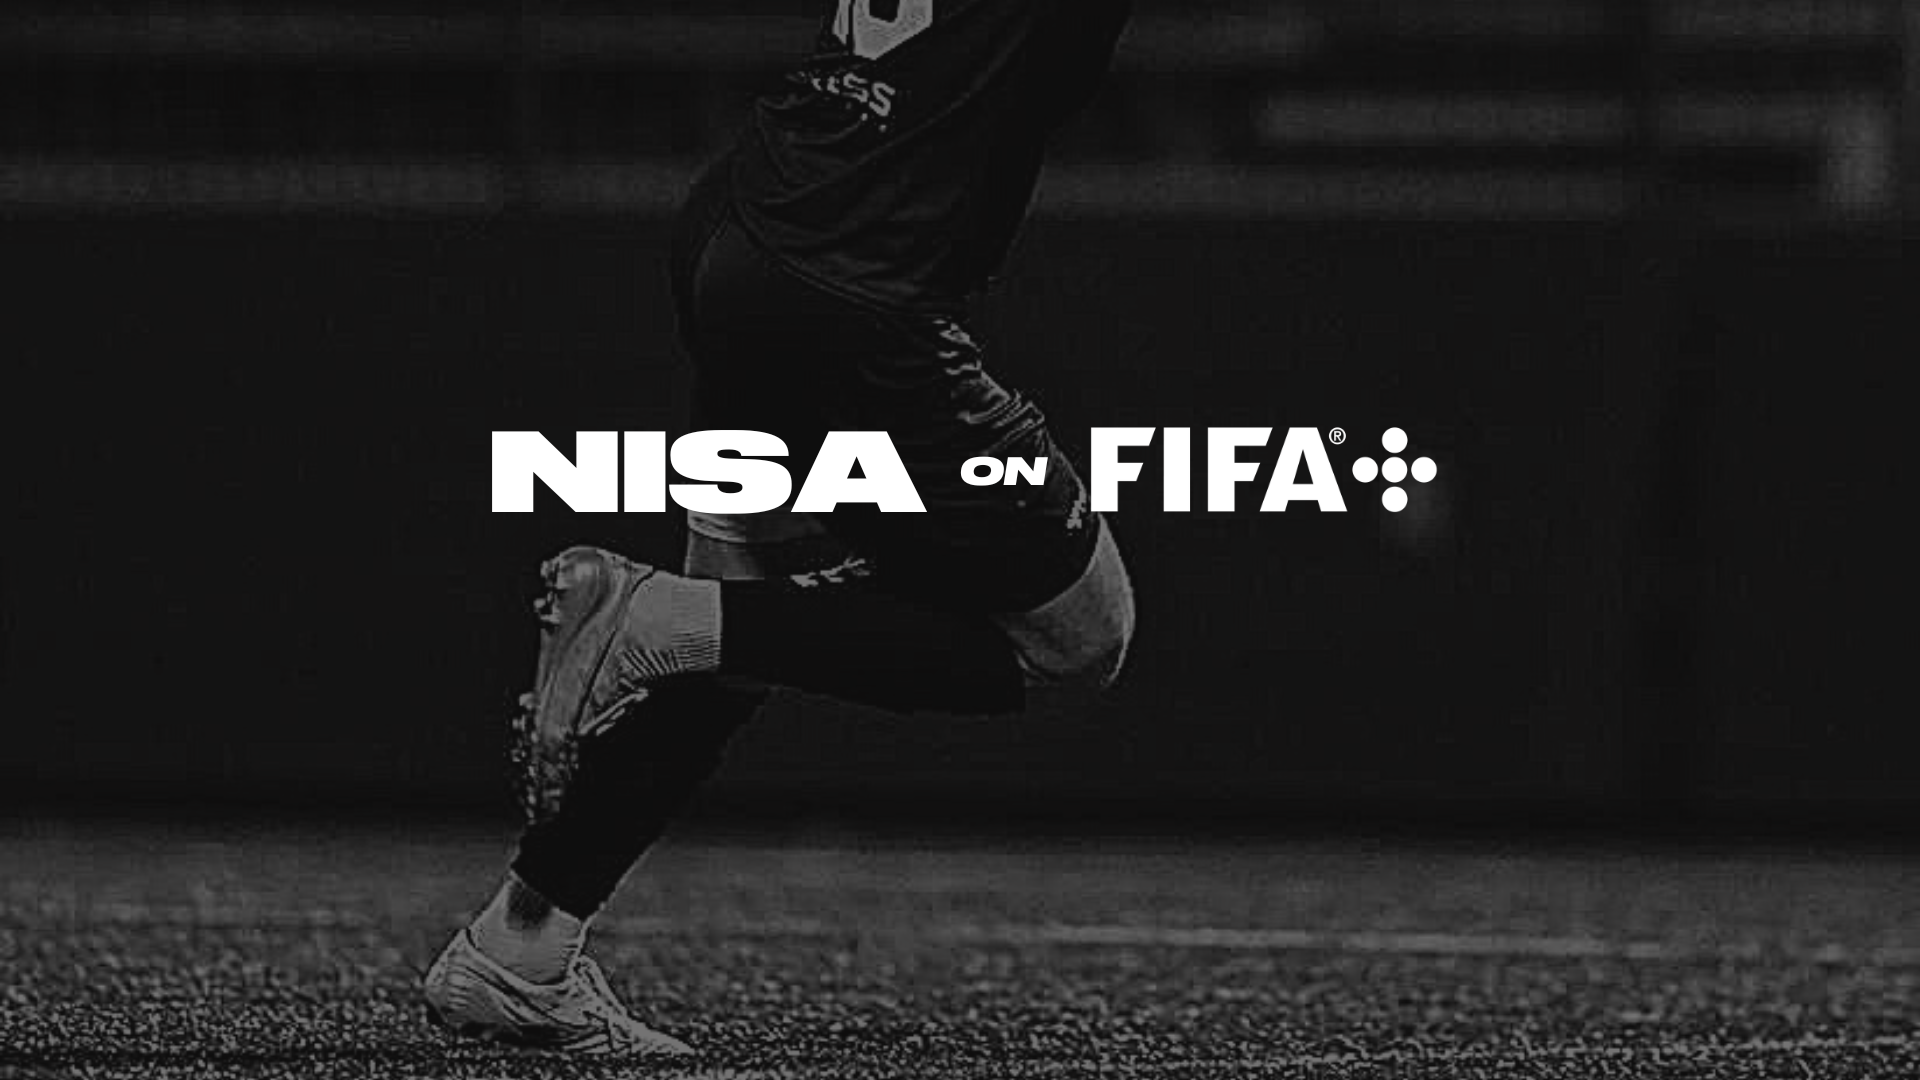 Nisa On Fifa National Independent Soccer Association